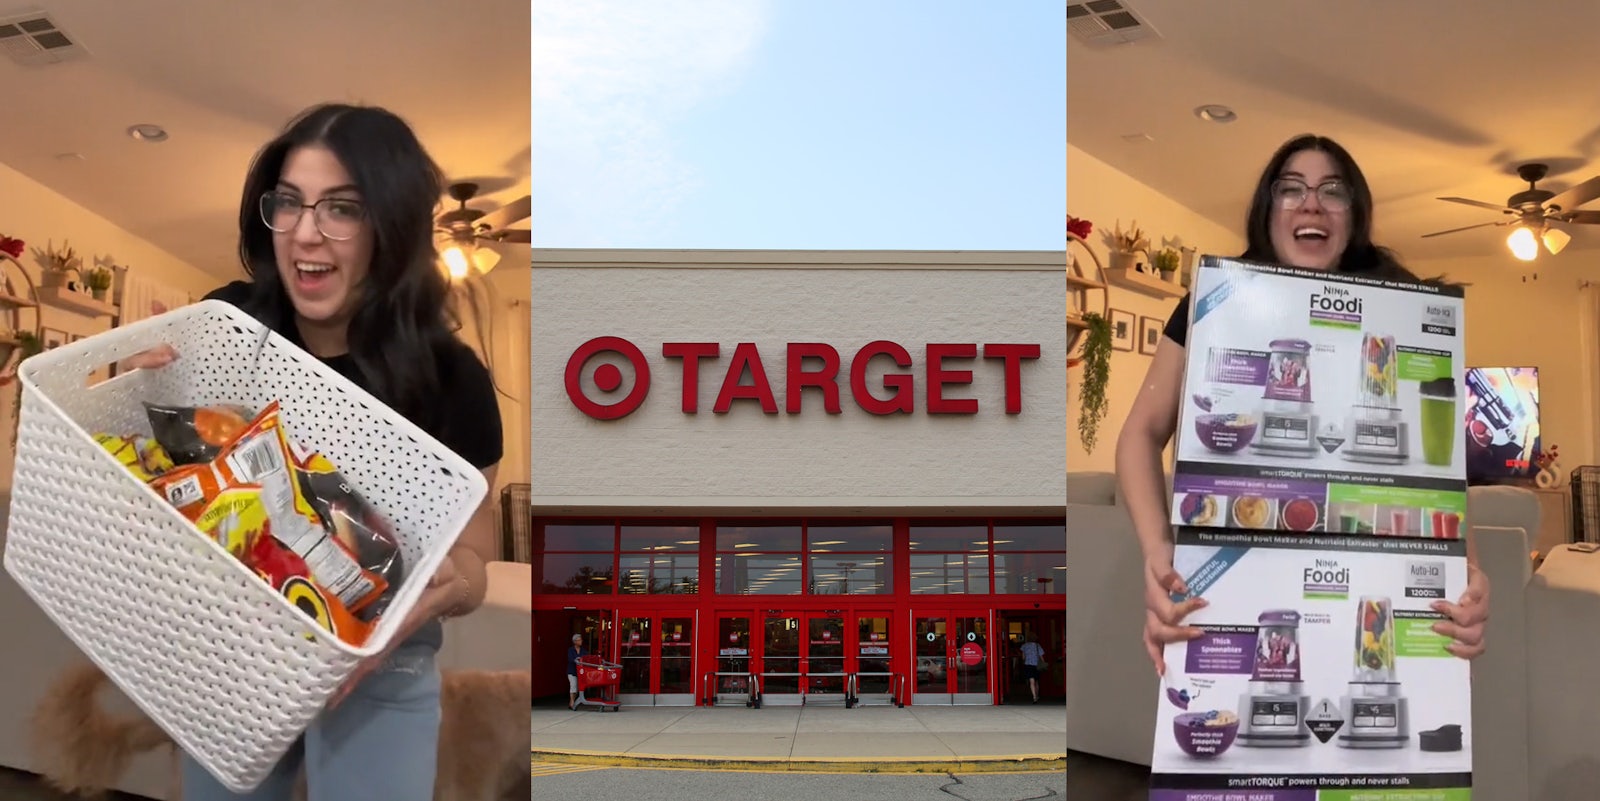 Shopper Ordered Beauty Blenders From Target, Got Ninja Blenders